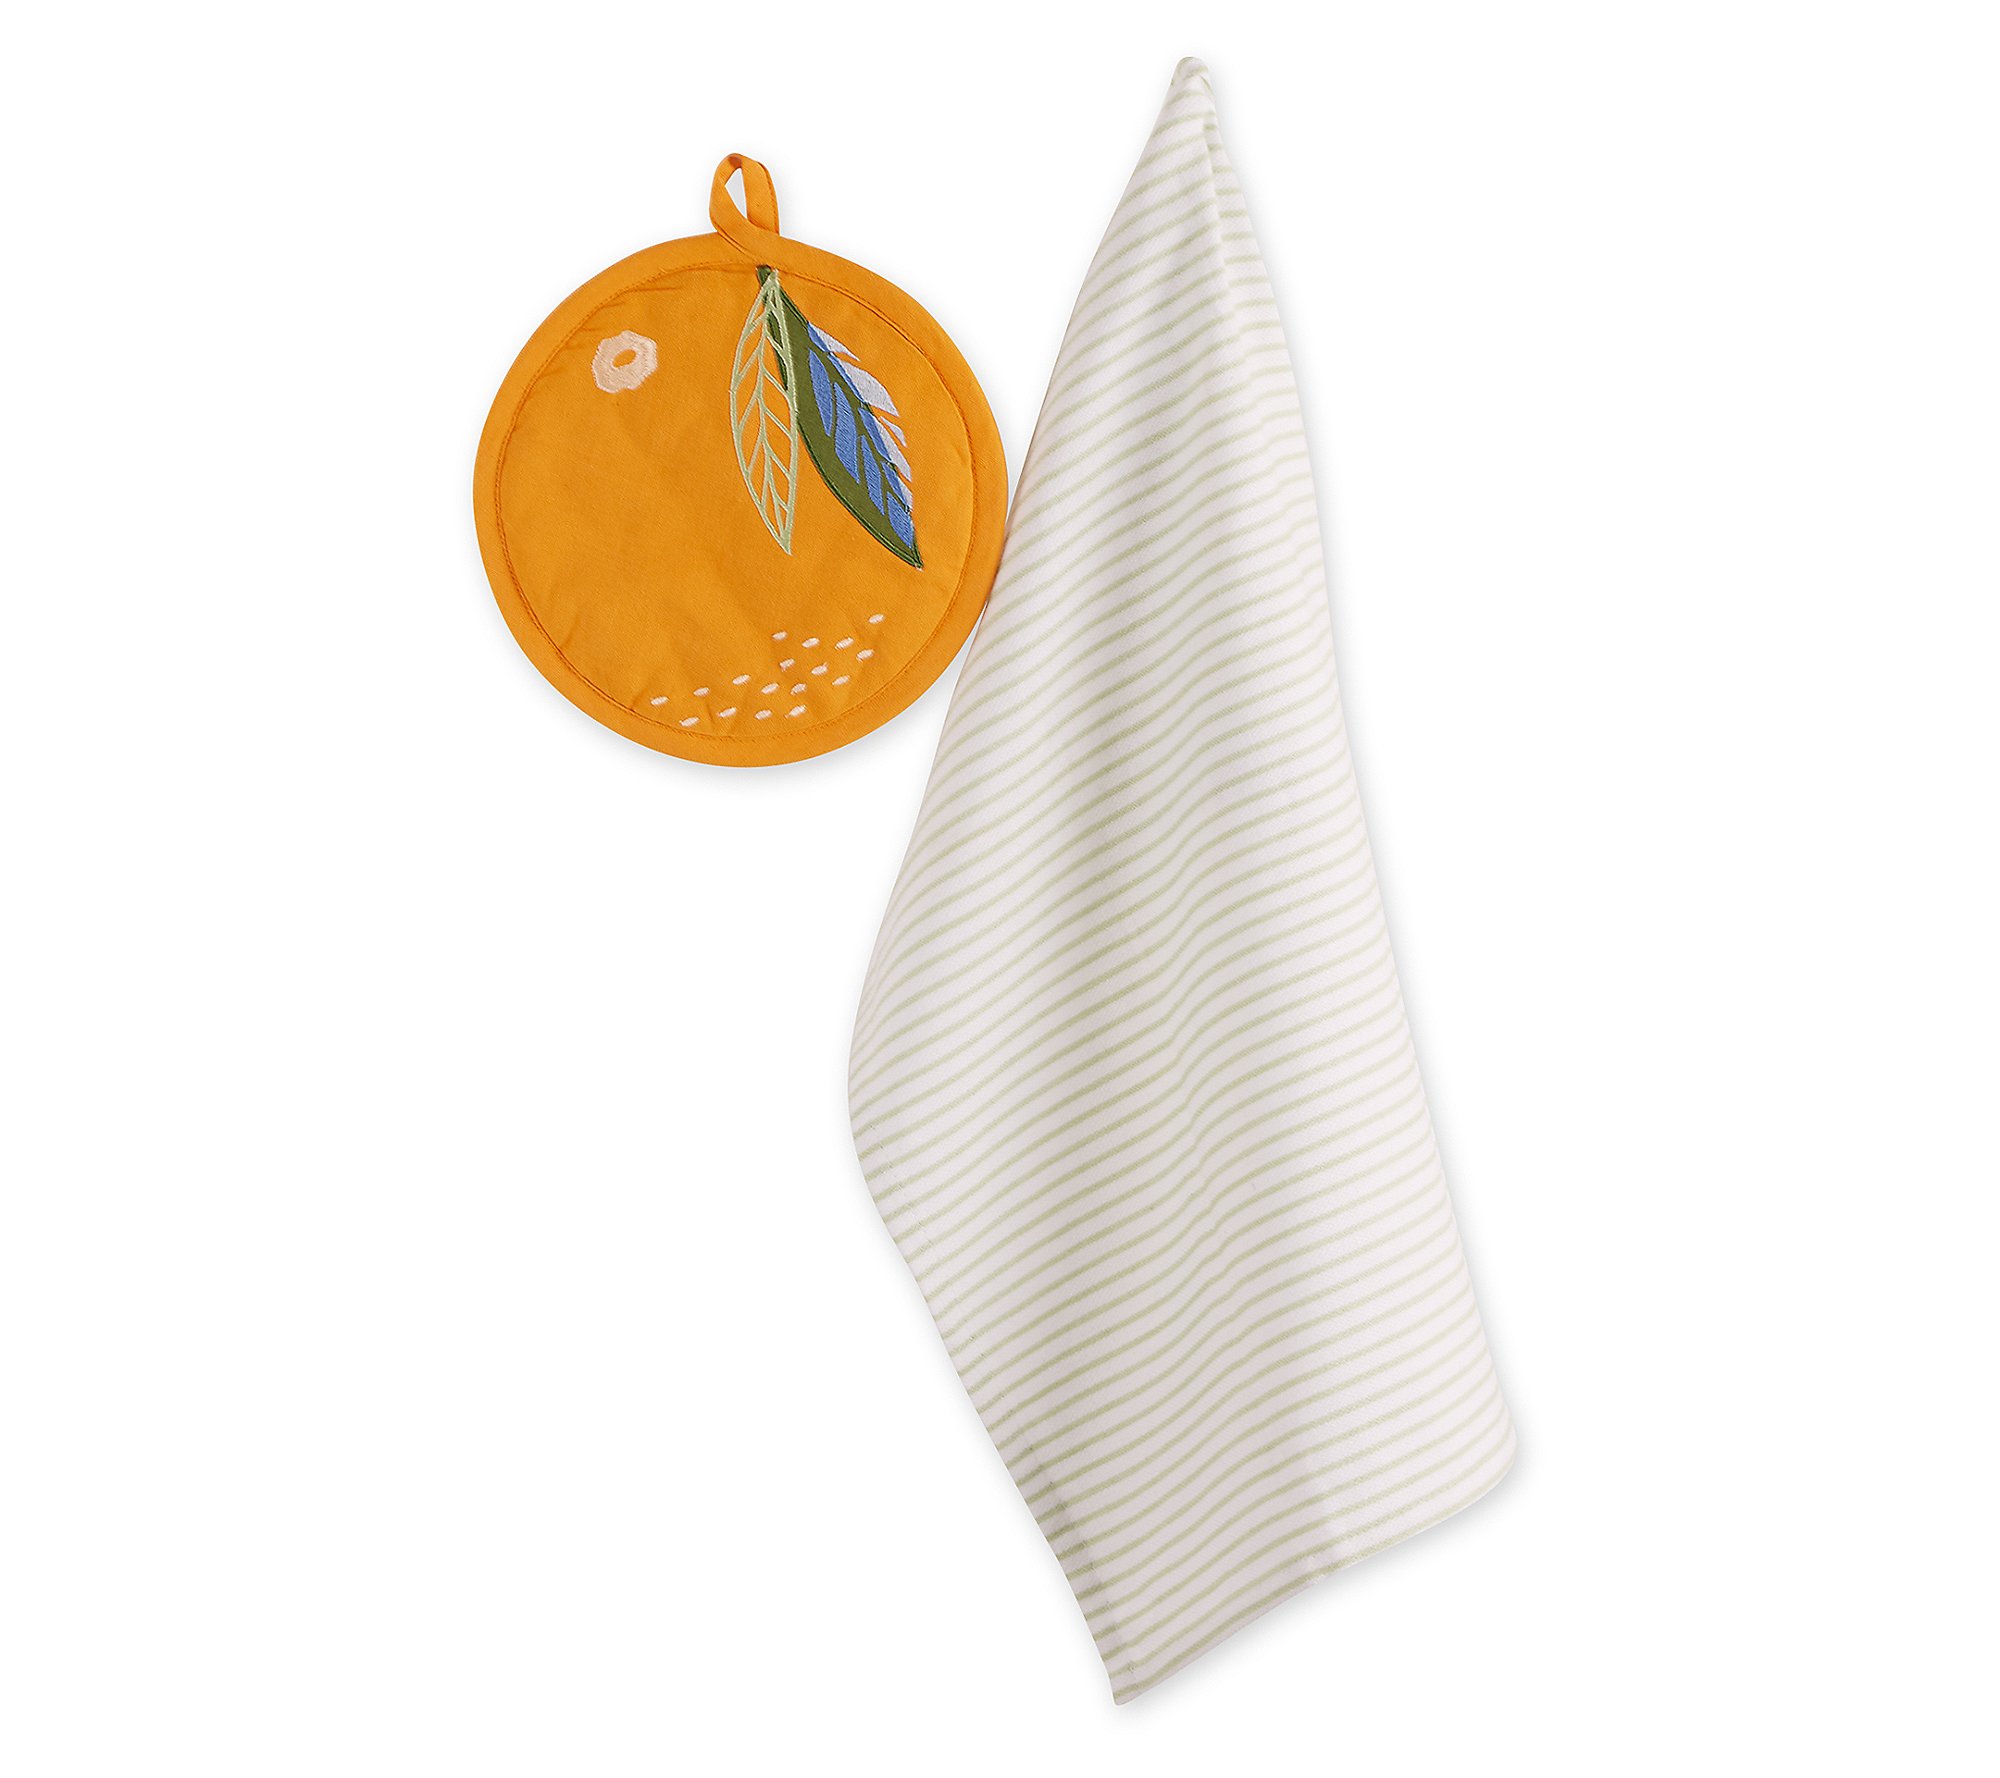 Design Imports Orange Potholder and Sage Kitchen Towel Gift Set